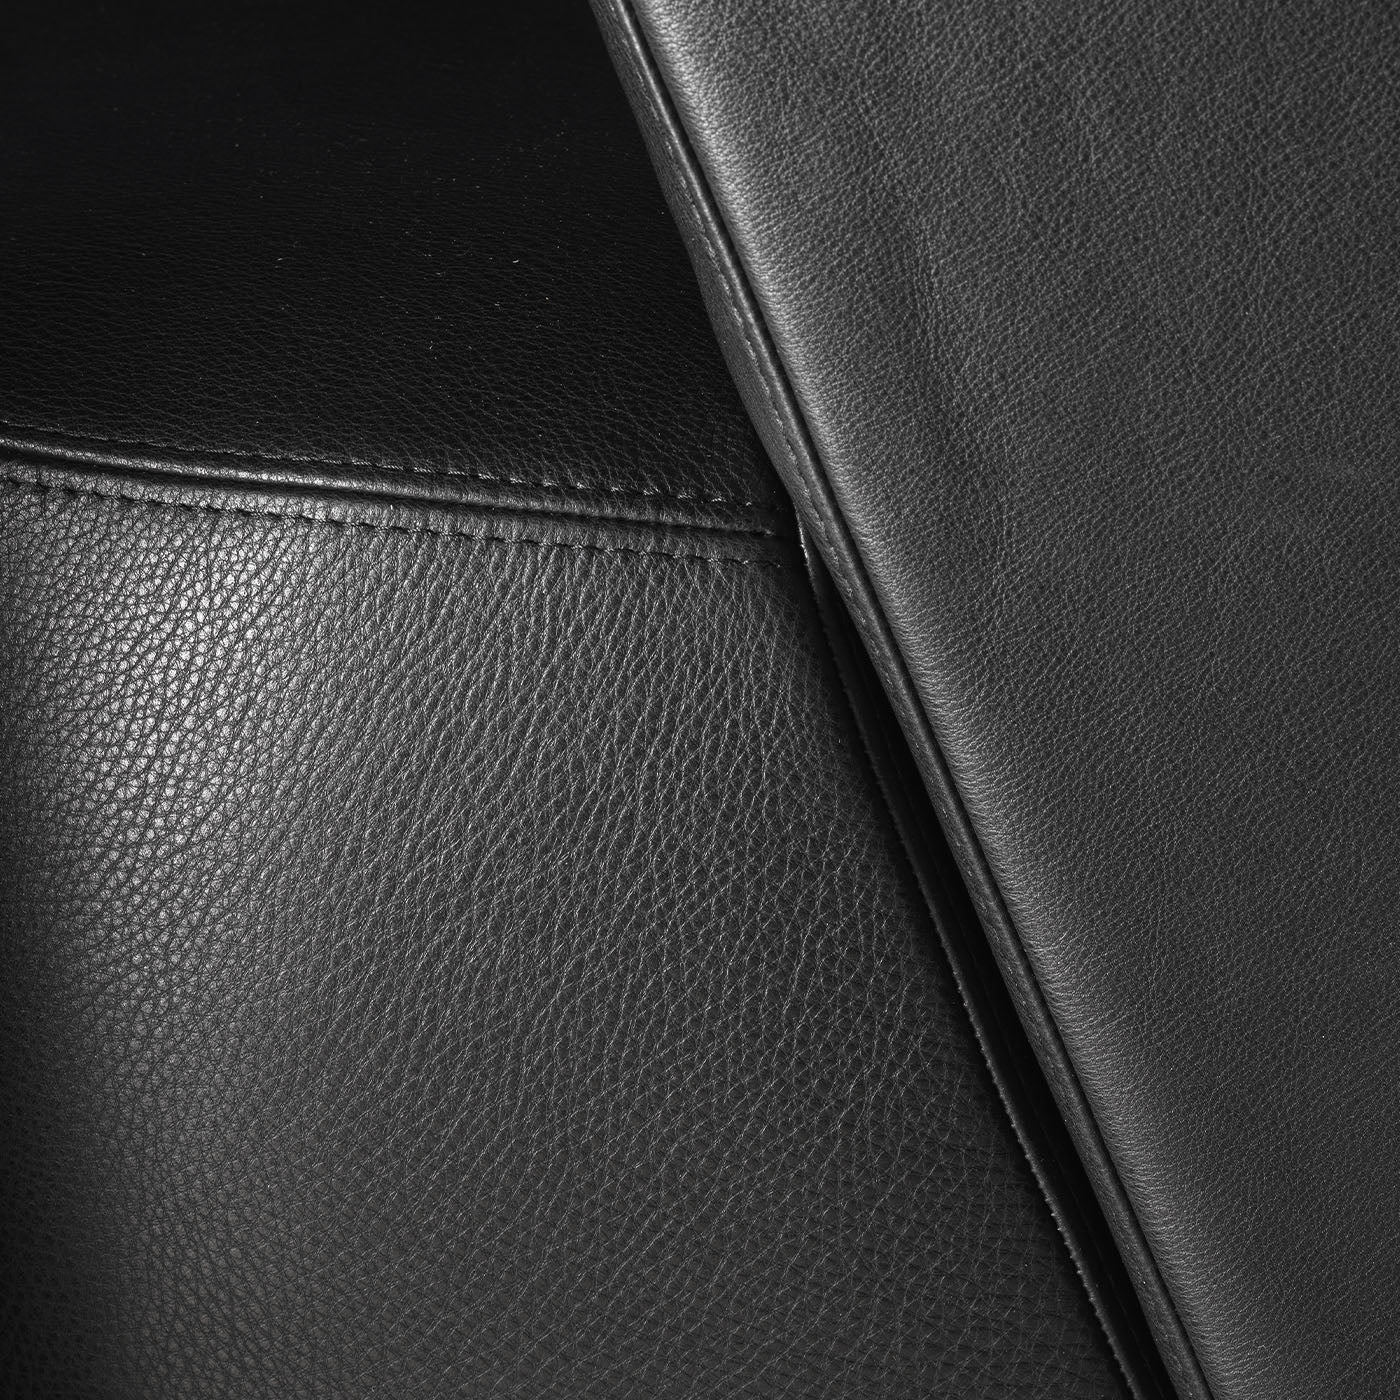 Spritz Swivel Black Leather Armchair by Lorenza Bozzoli - Alternative view 2